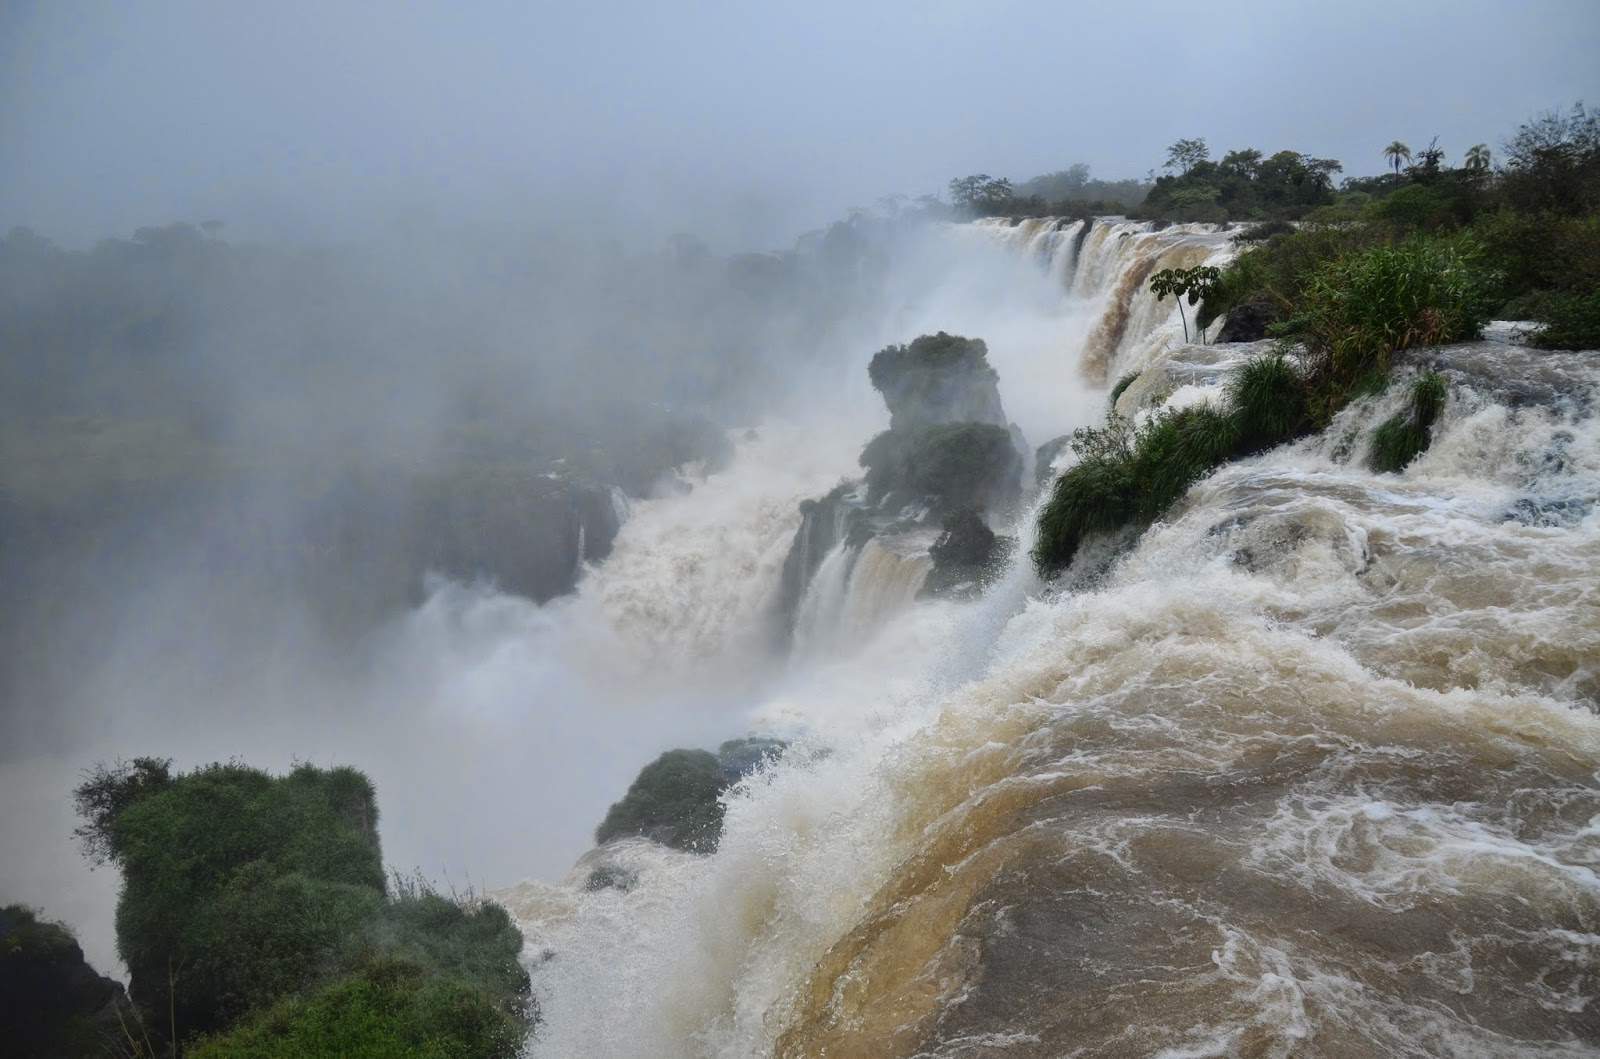 Upper Circuit of Parque Nacional Iguazú, Argentina